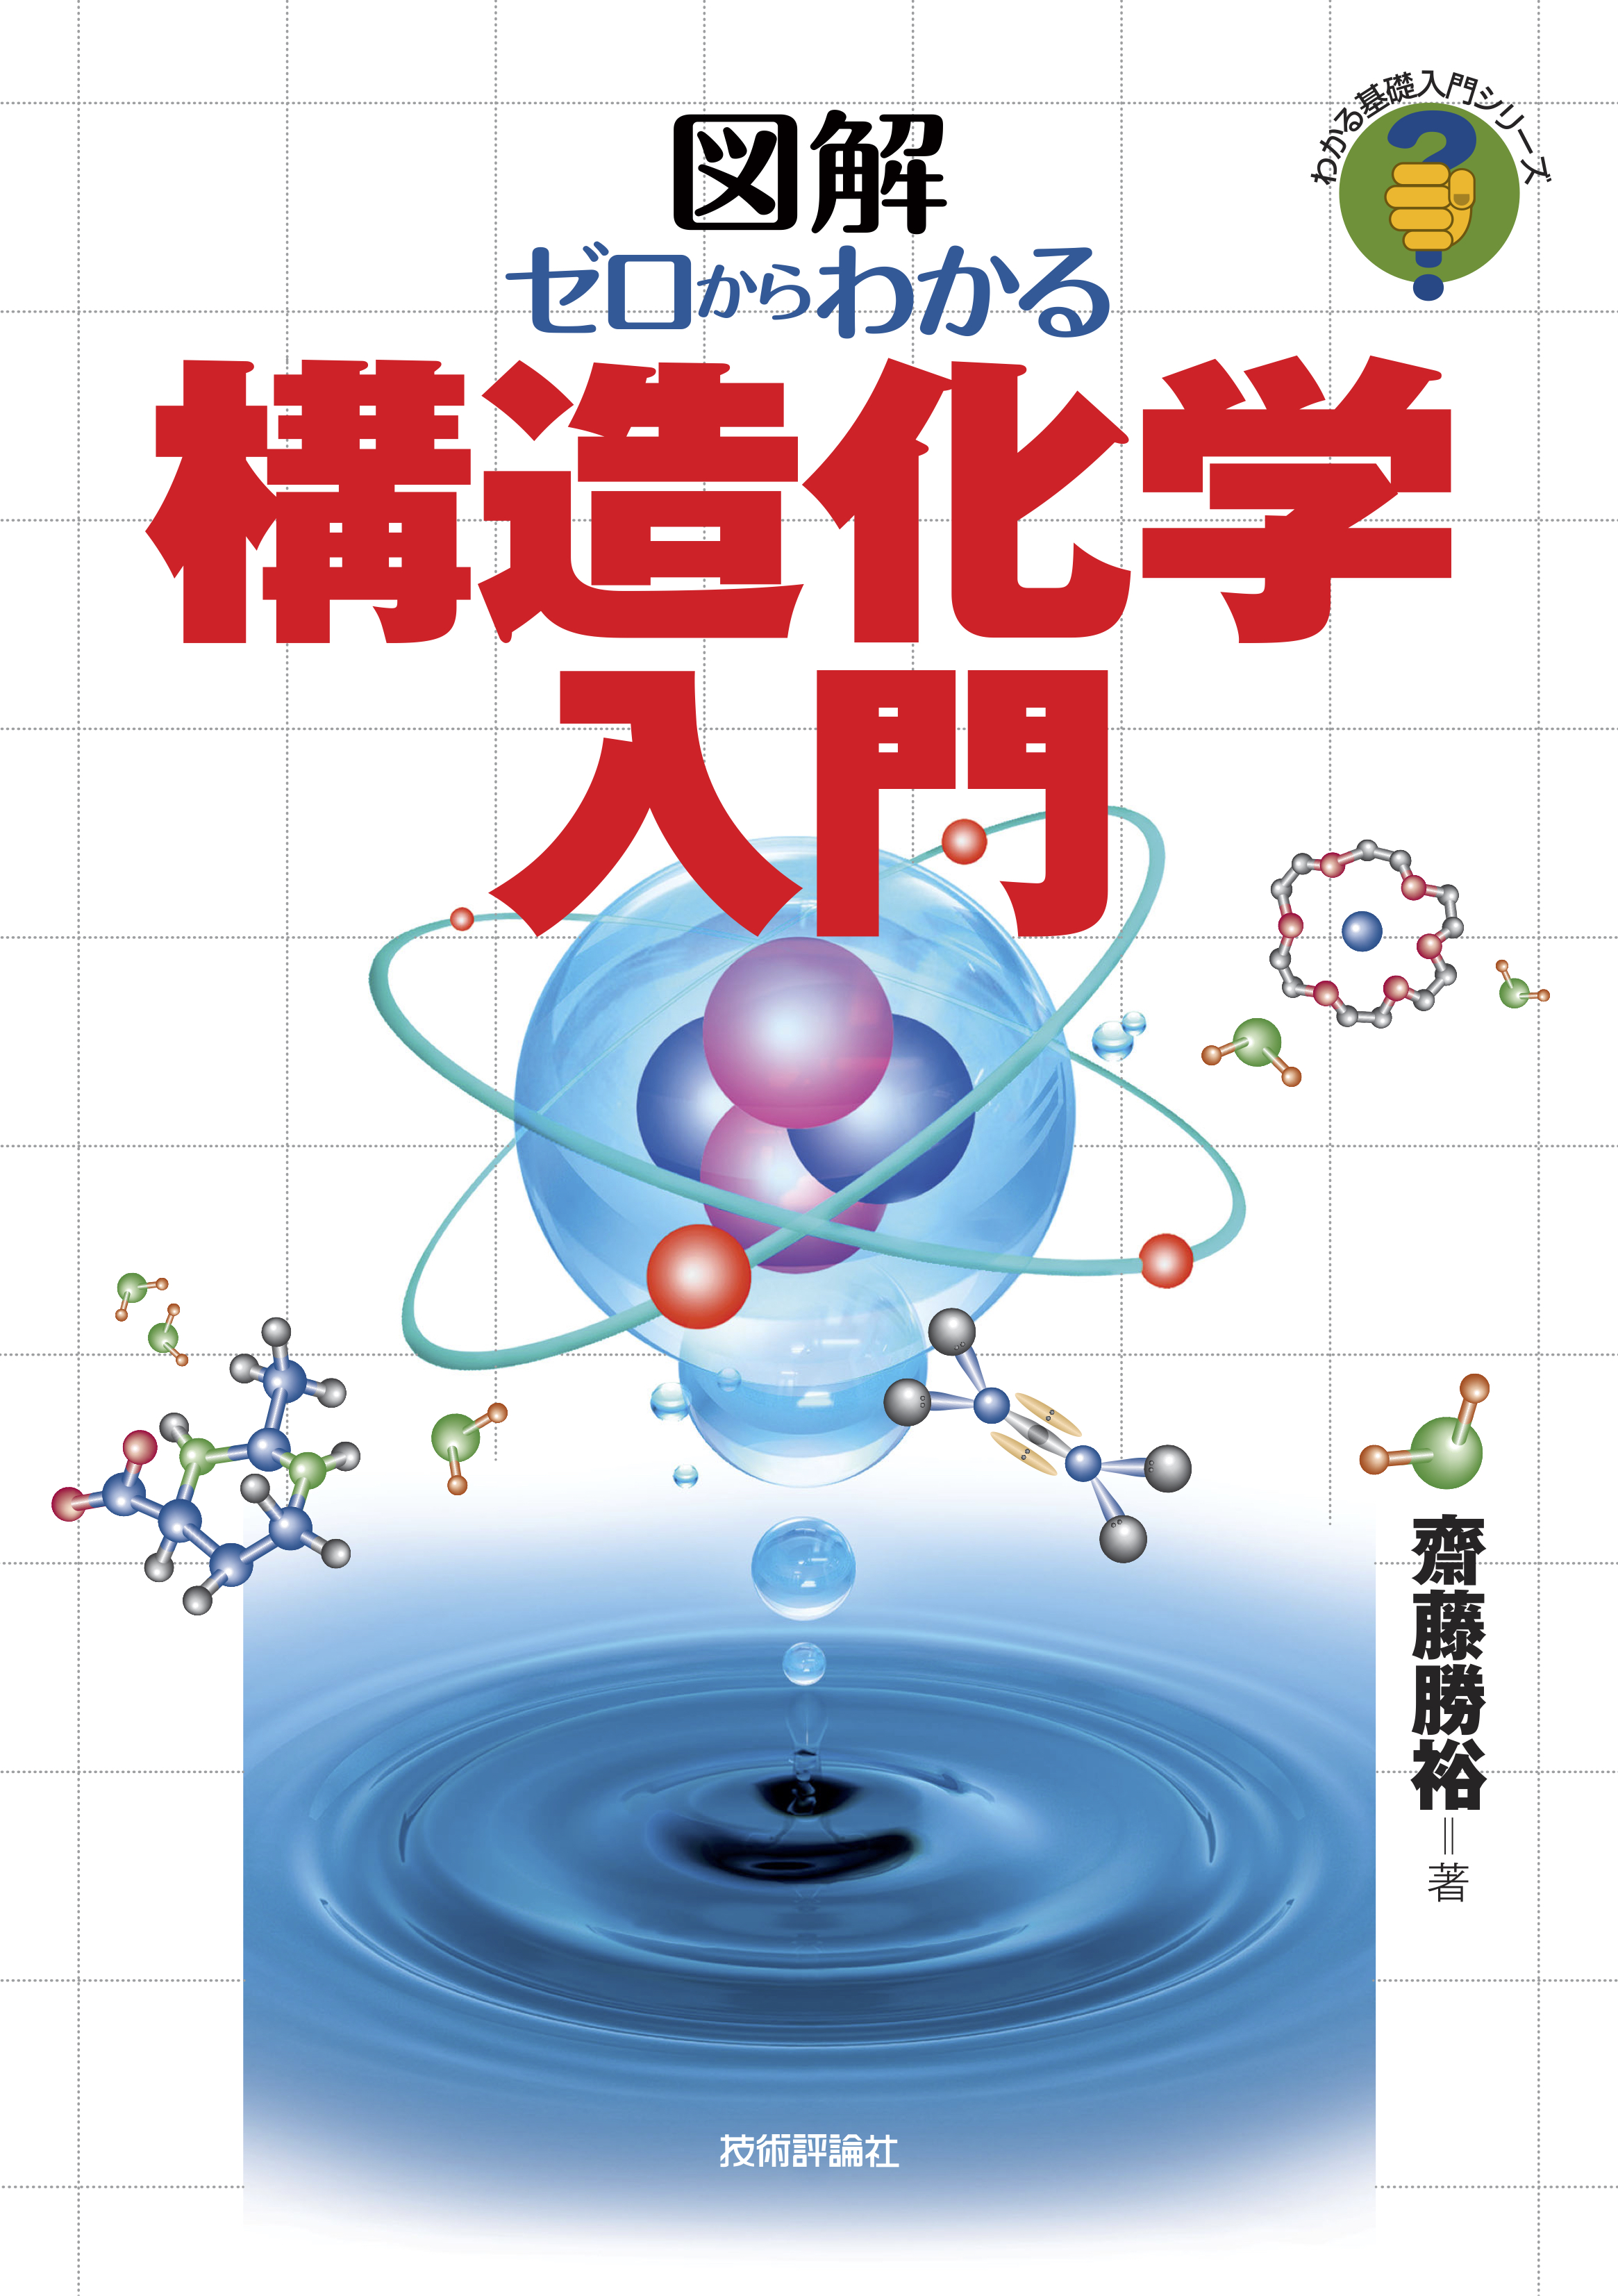 ゼロからわかる構造化学入門 - 齋藤勝裕 - 漫画・無料試し読みなら